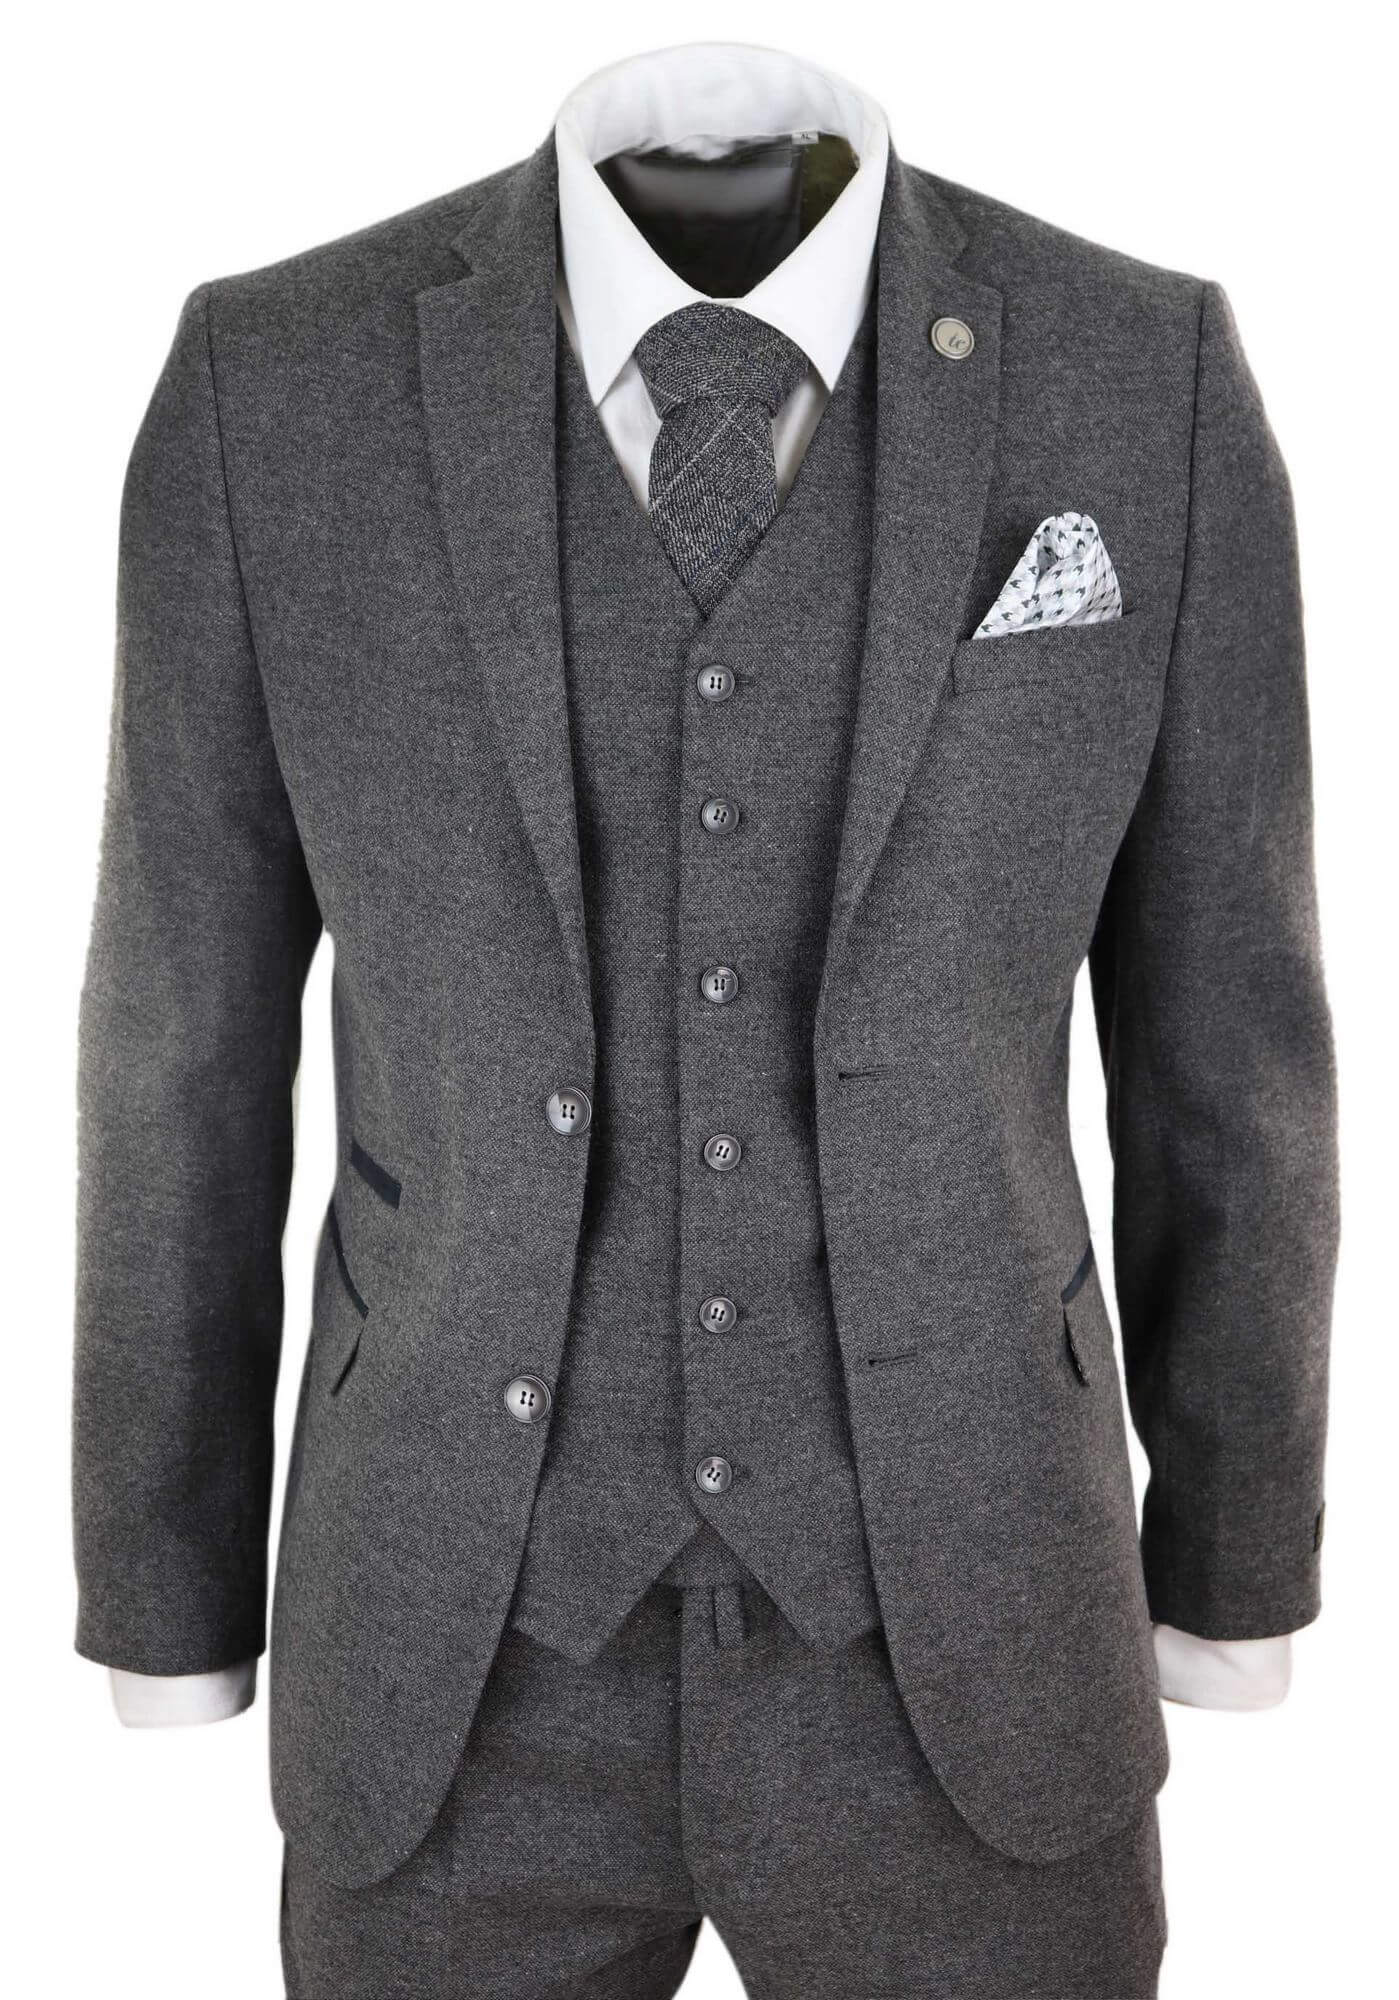 Mens Grey Wool Suit